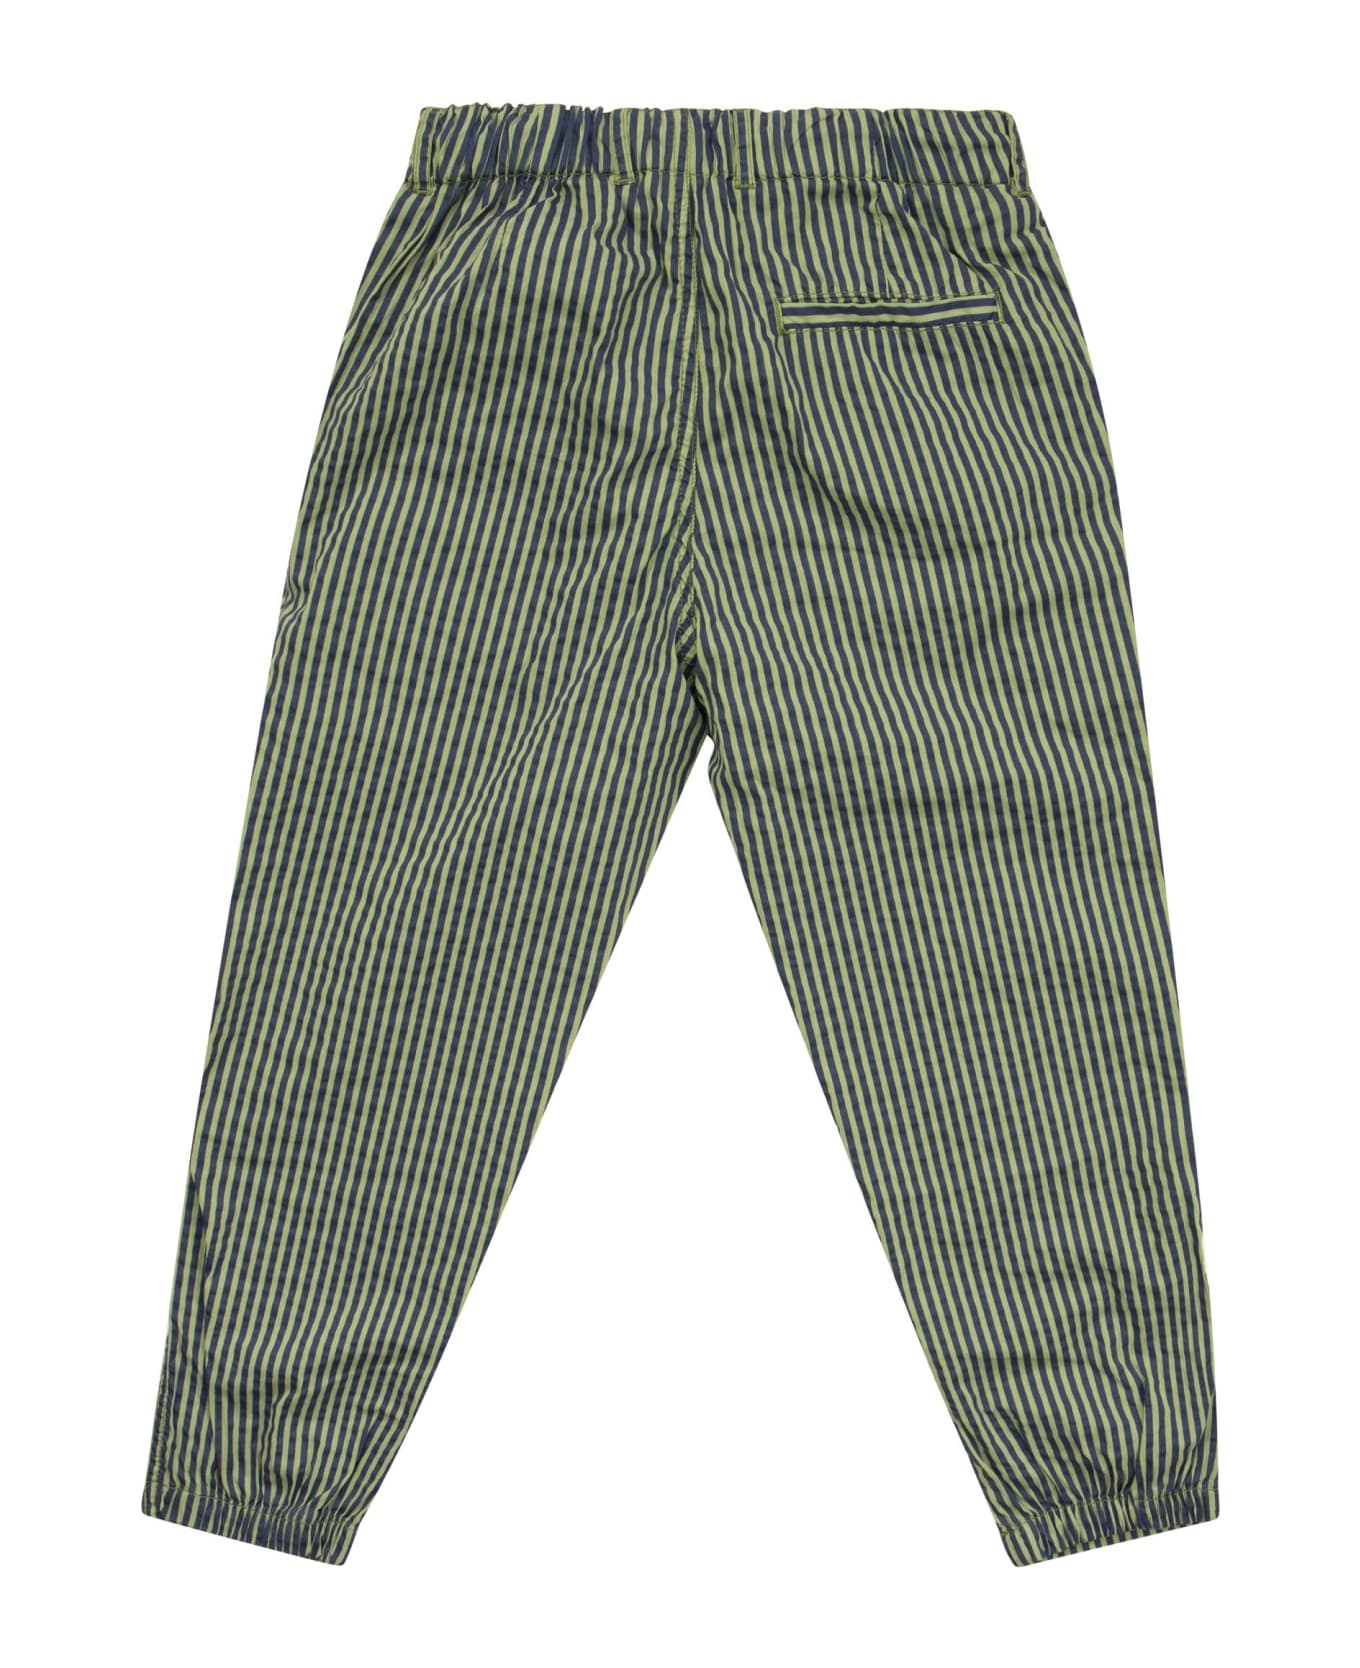 Il Gufo Striped Seerscuker Trousers - Green